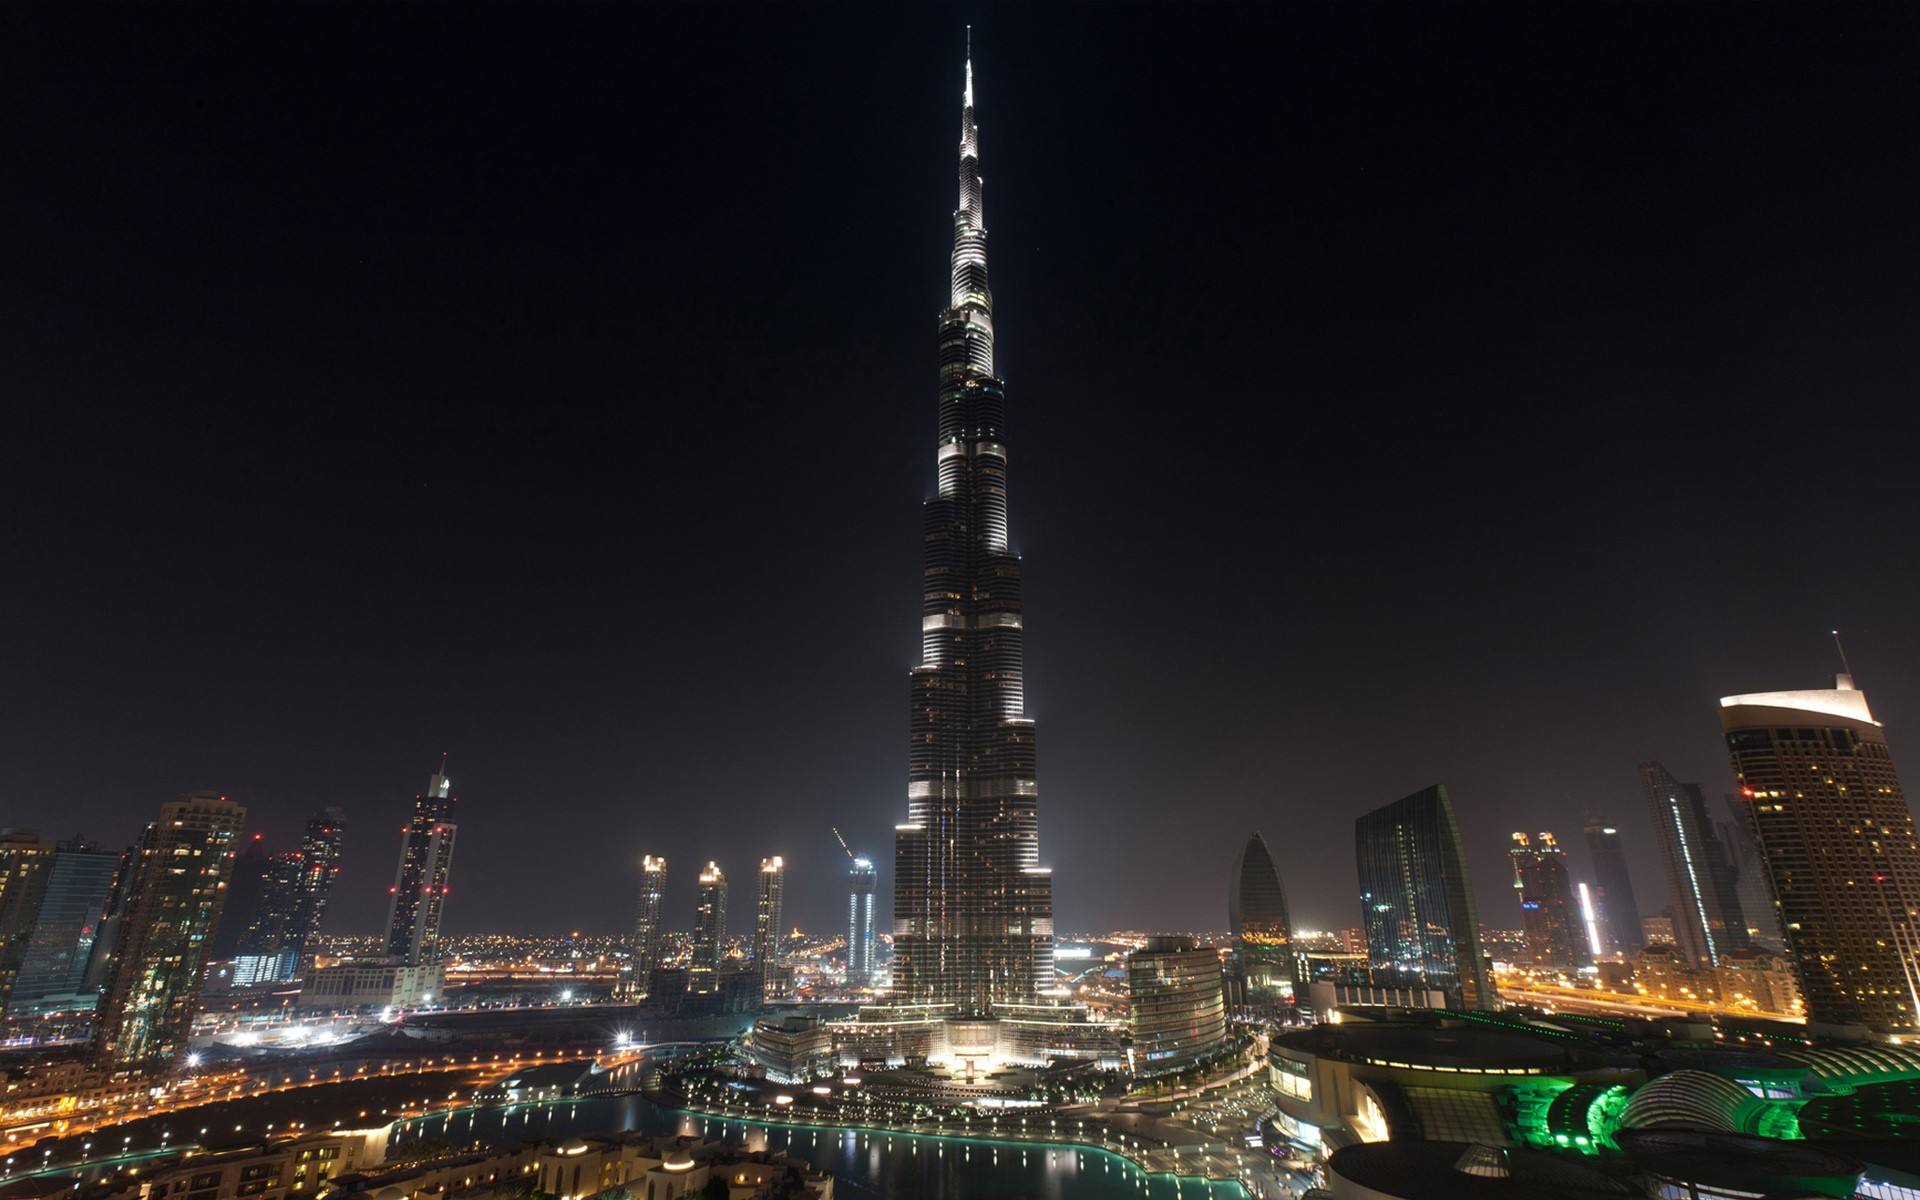 迪拜塔世界第一高楼:一栋有162层总高828米的摩天大楼!